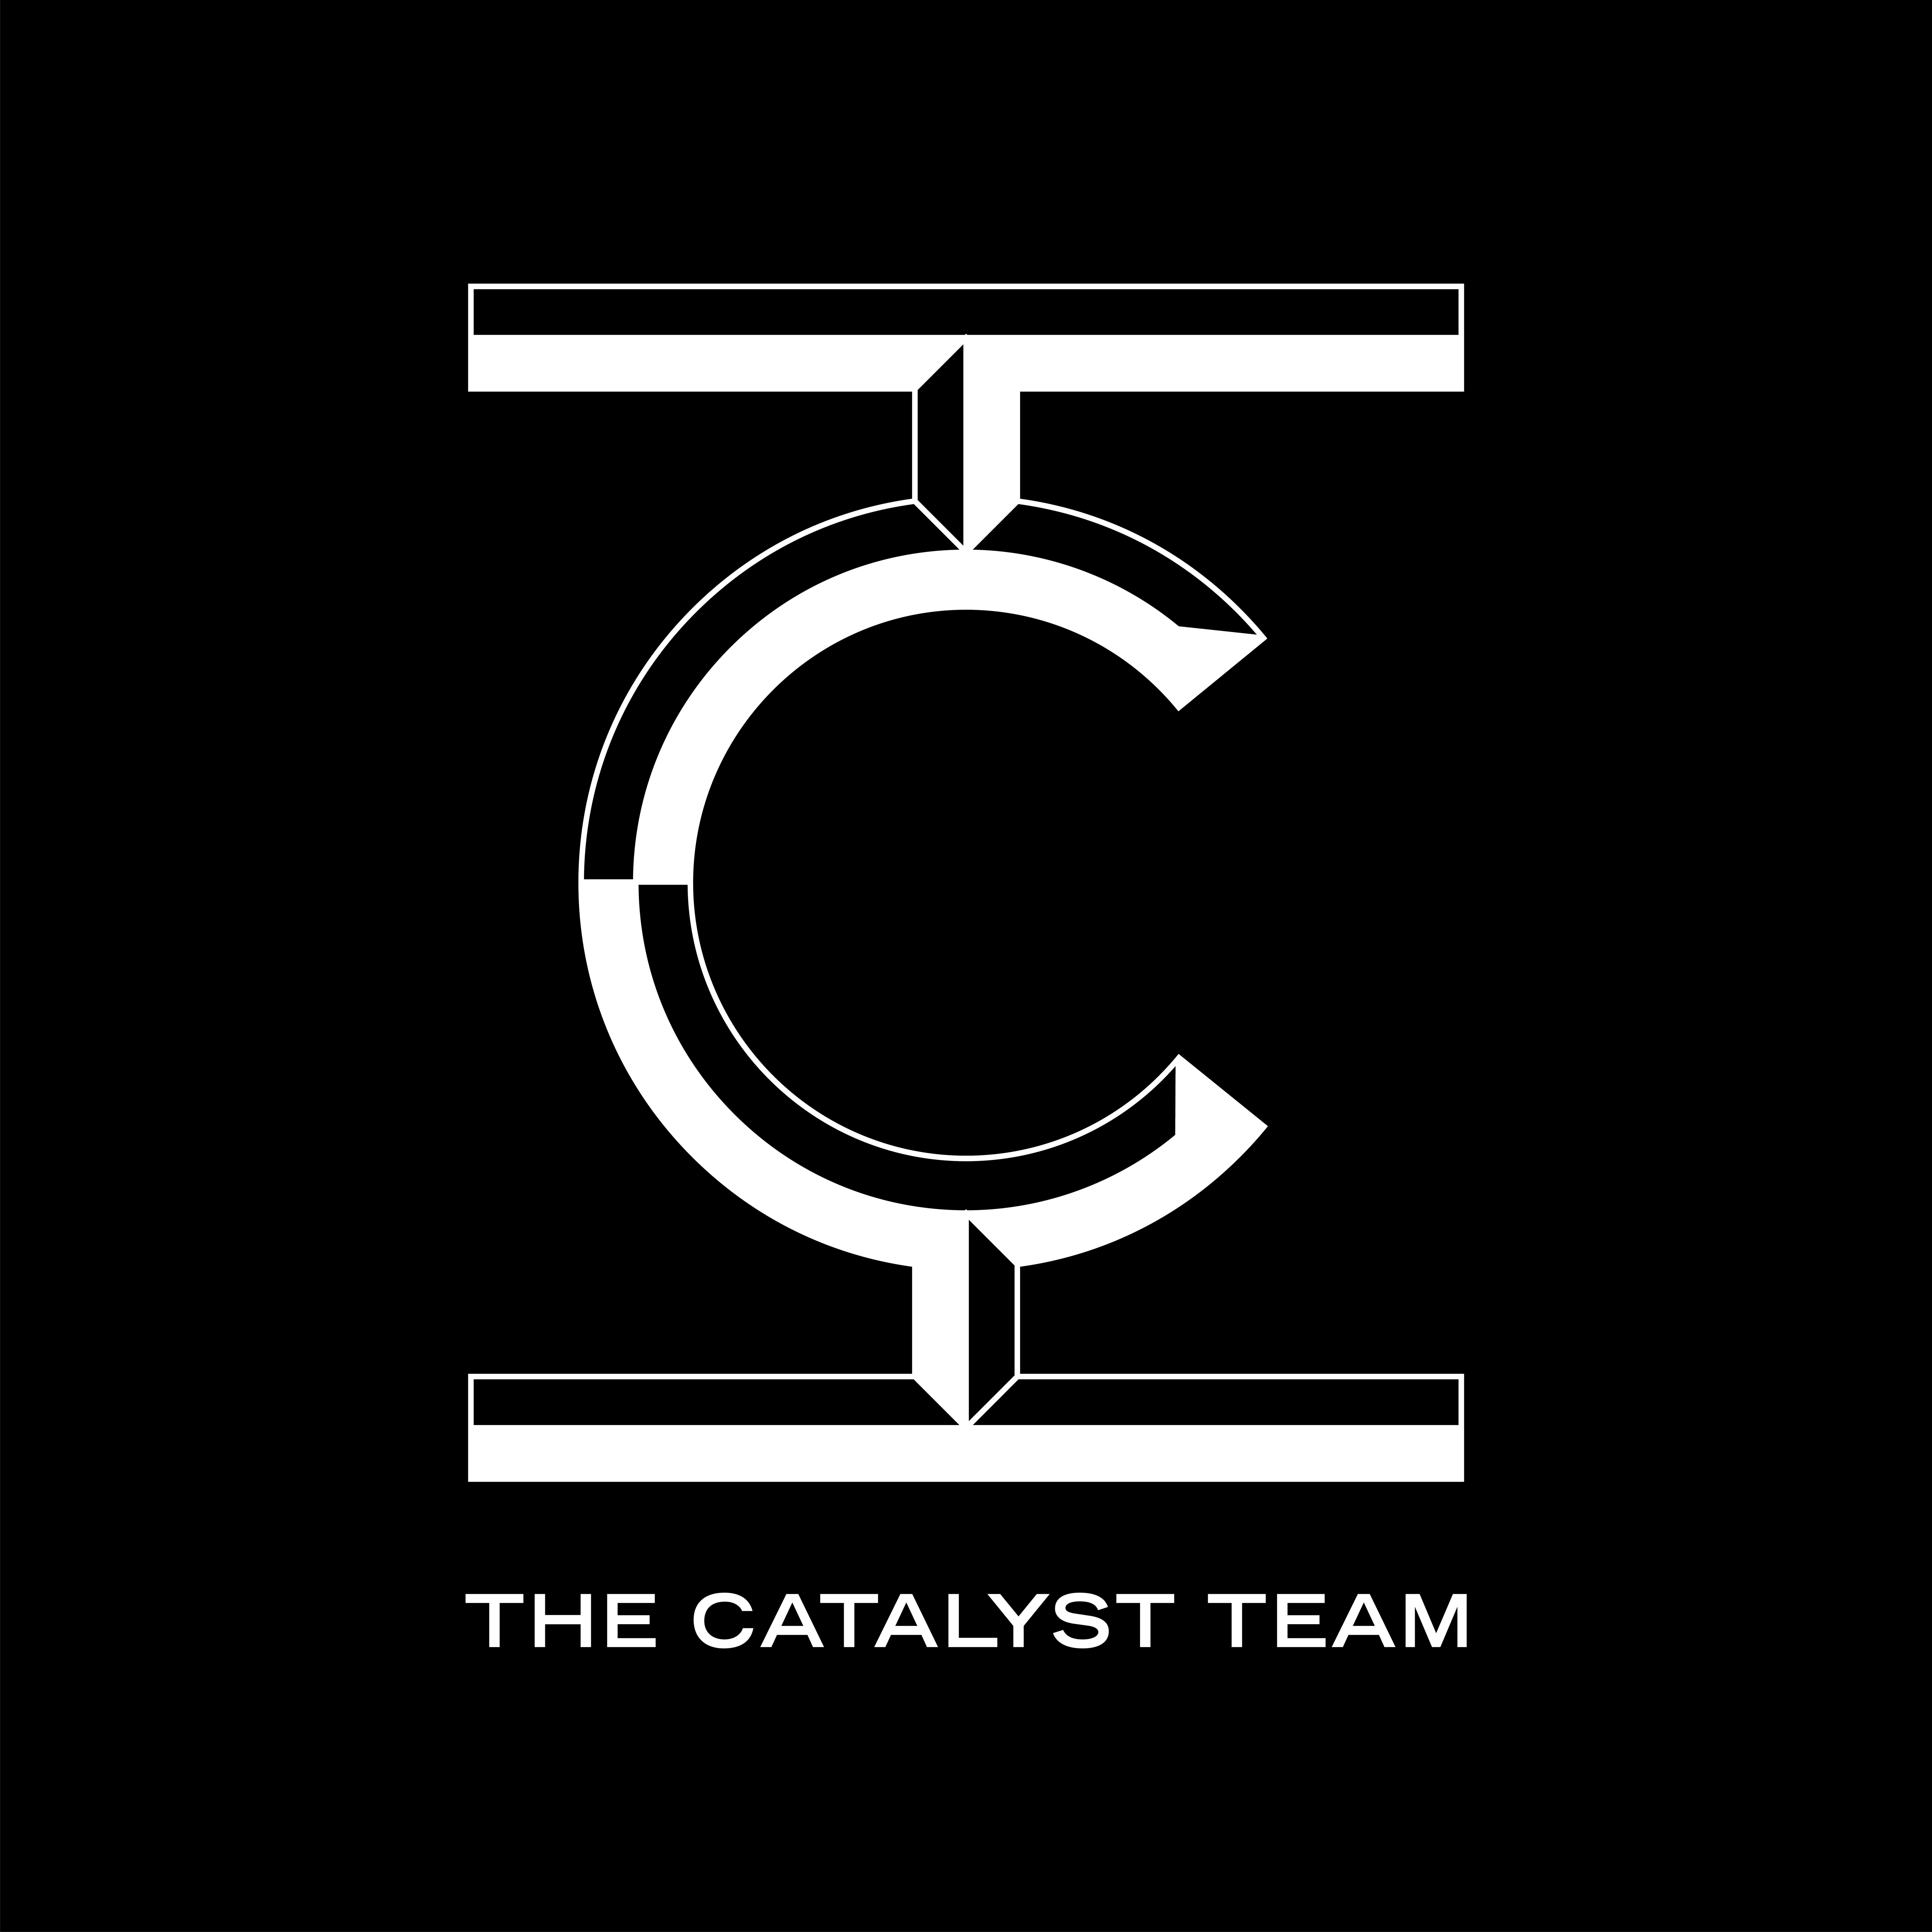 The Catalyst Team